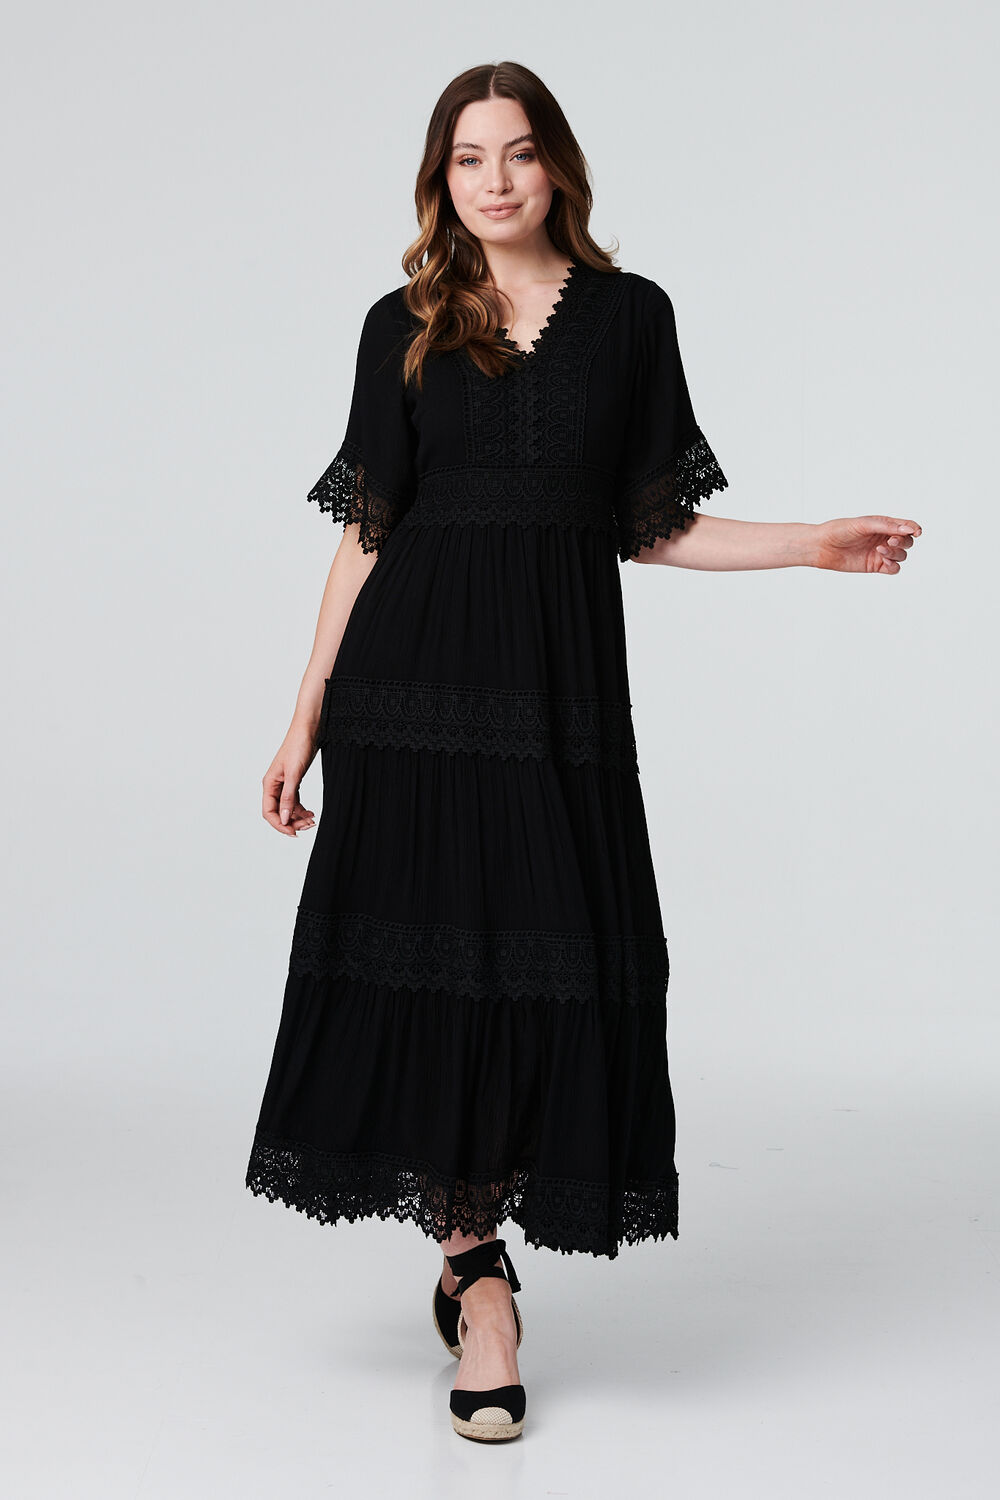 Izabel London Black - Short Sleeve Crochet Maxi Dress, Size: 14